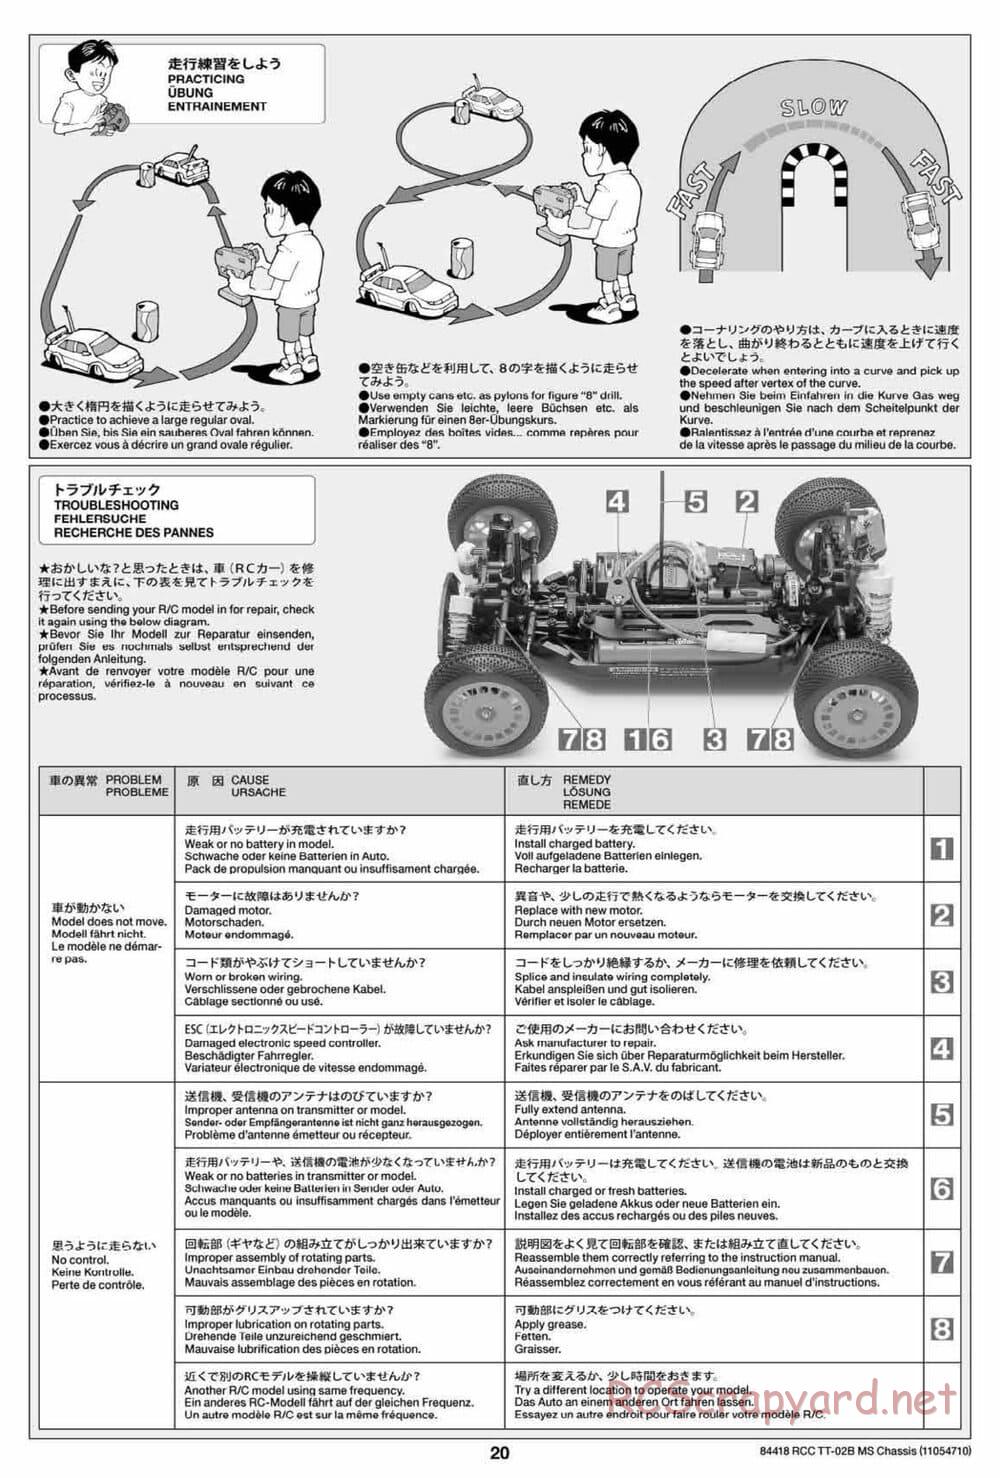 Tamiya - TT-02B MS Chassis - Manual - Page 20